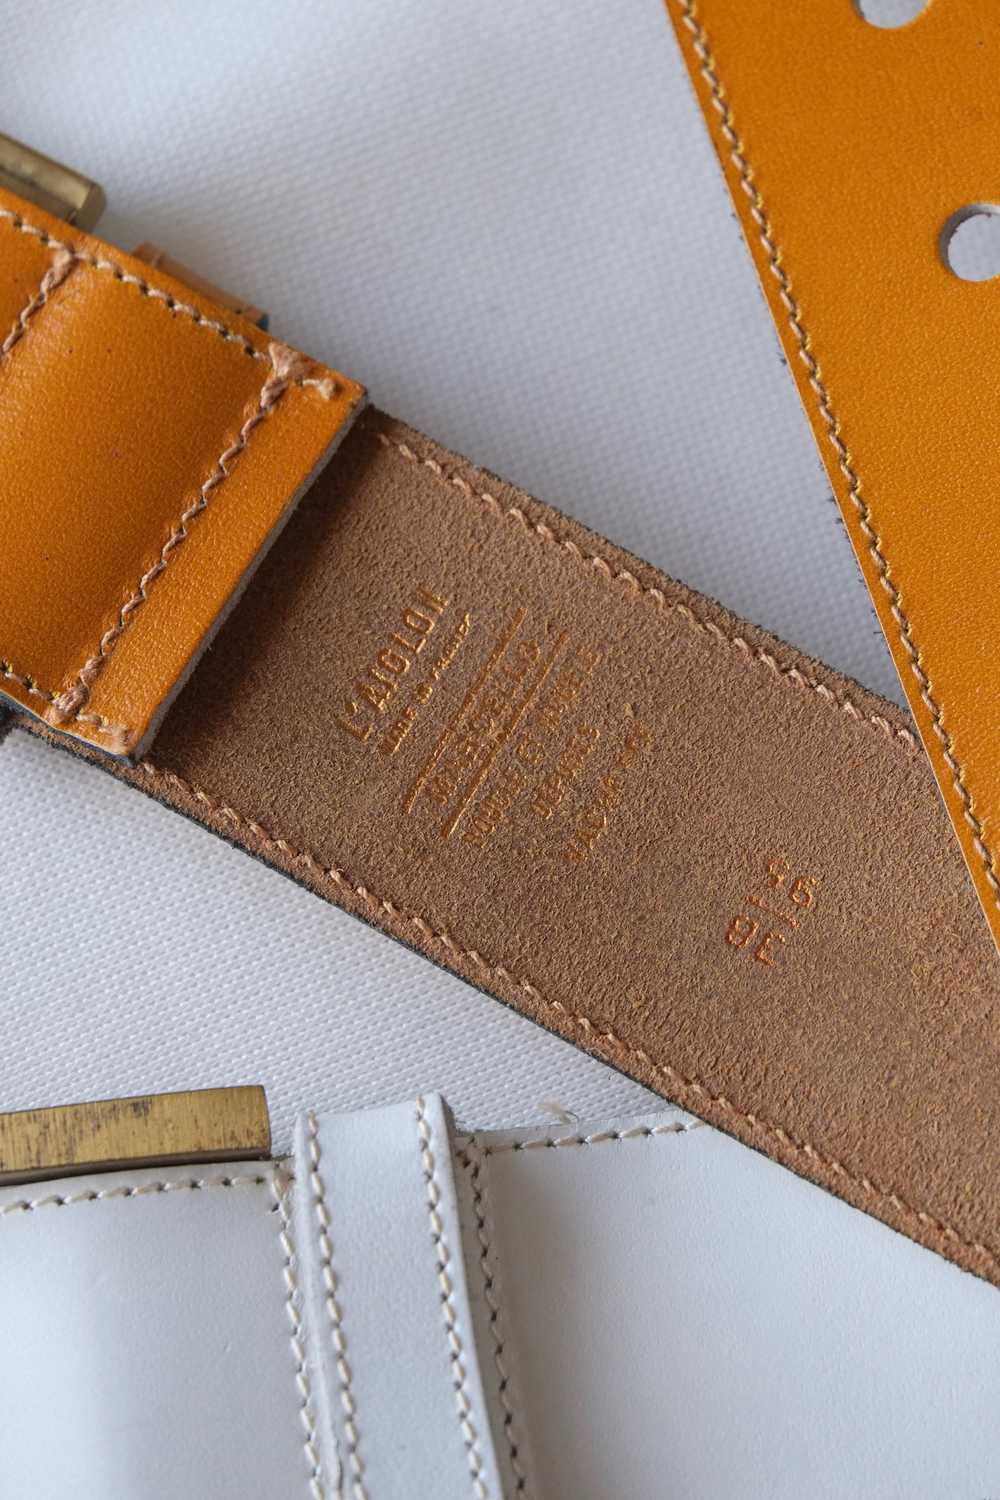 L'AIGLON Marcello Leather Belt - image 4